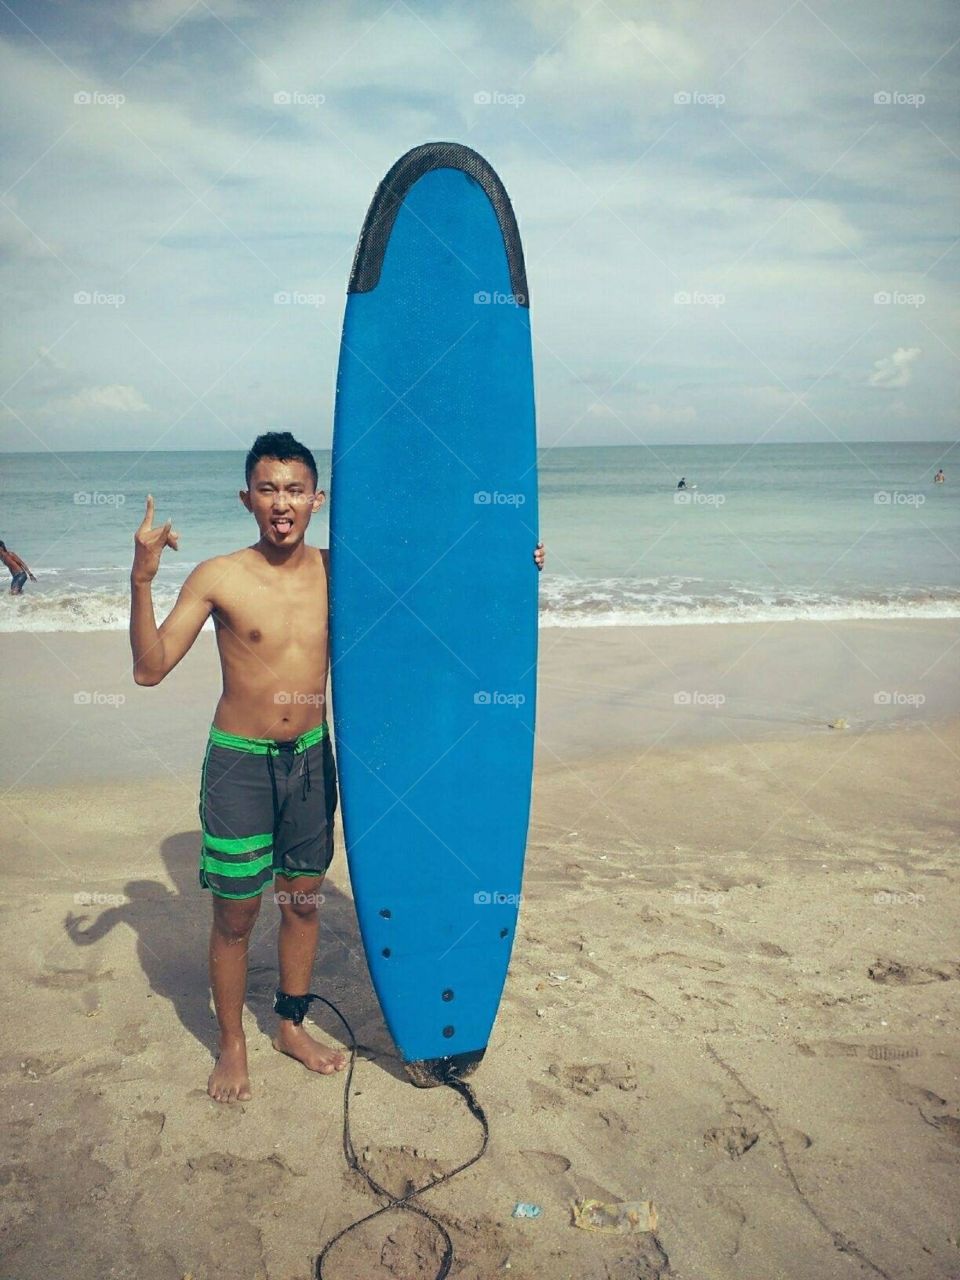 Surf n enjoy